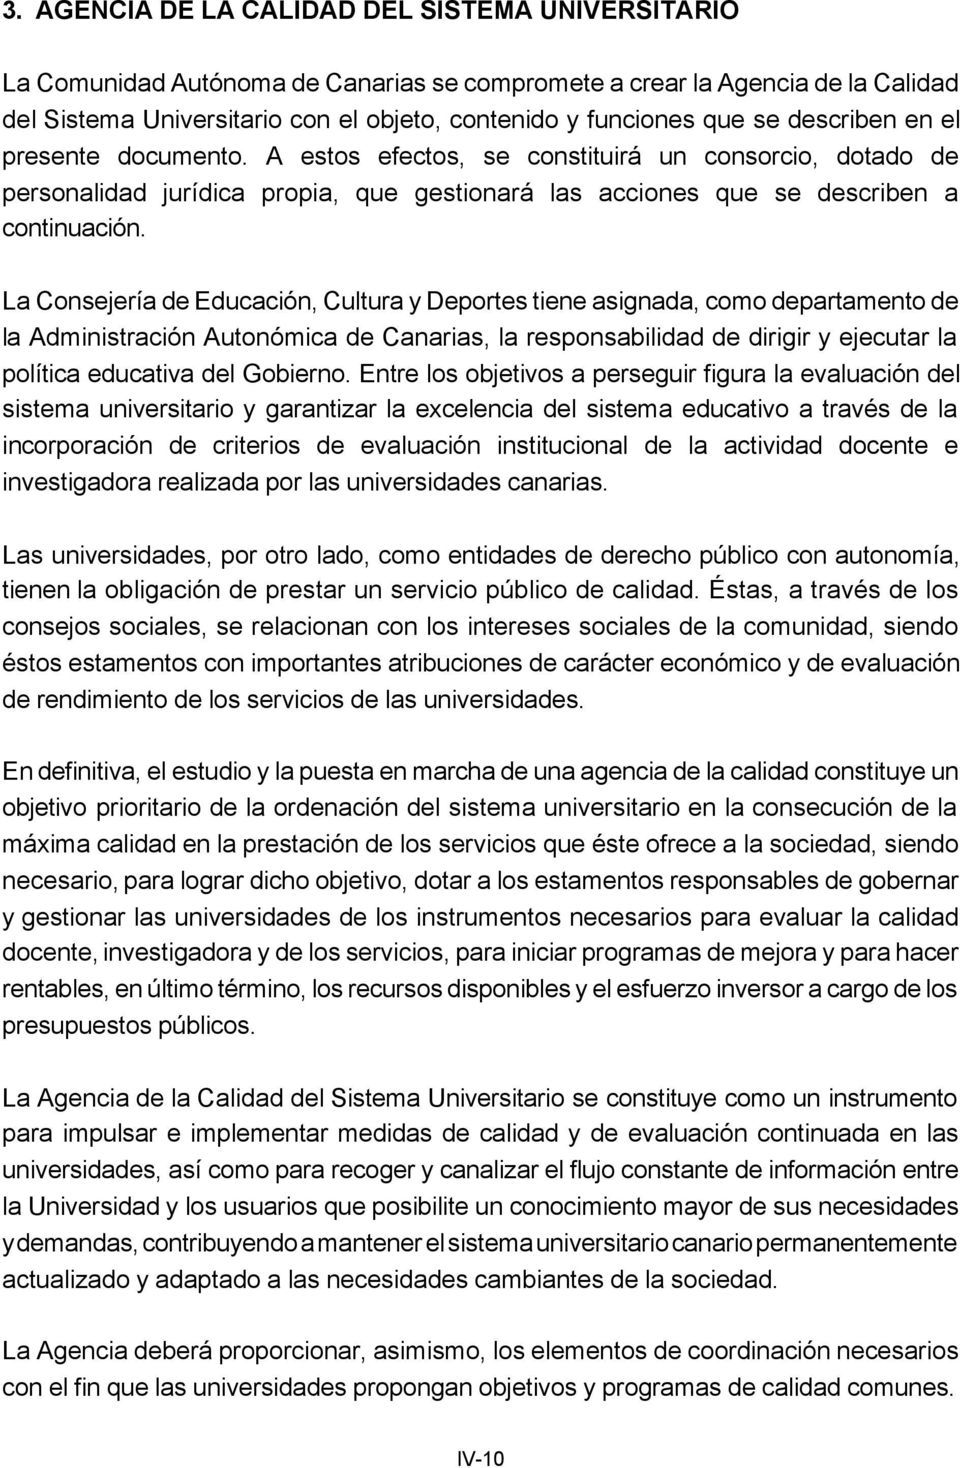 La Consejería de Educación, Cultura y Deportes tiene asignada, como departamento de la Administración Autonómica de Canarias, la responsabilidad de dirigir y ejecutar la política educativa del